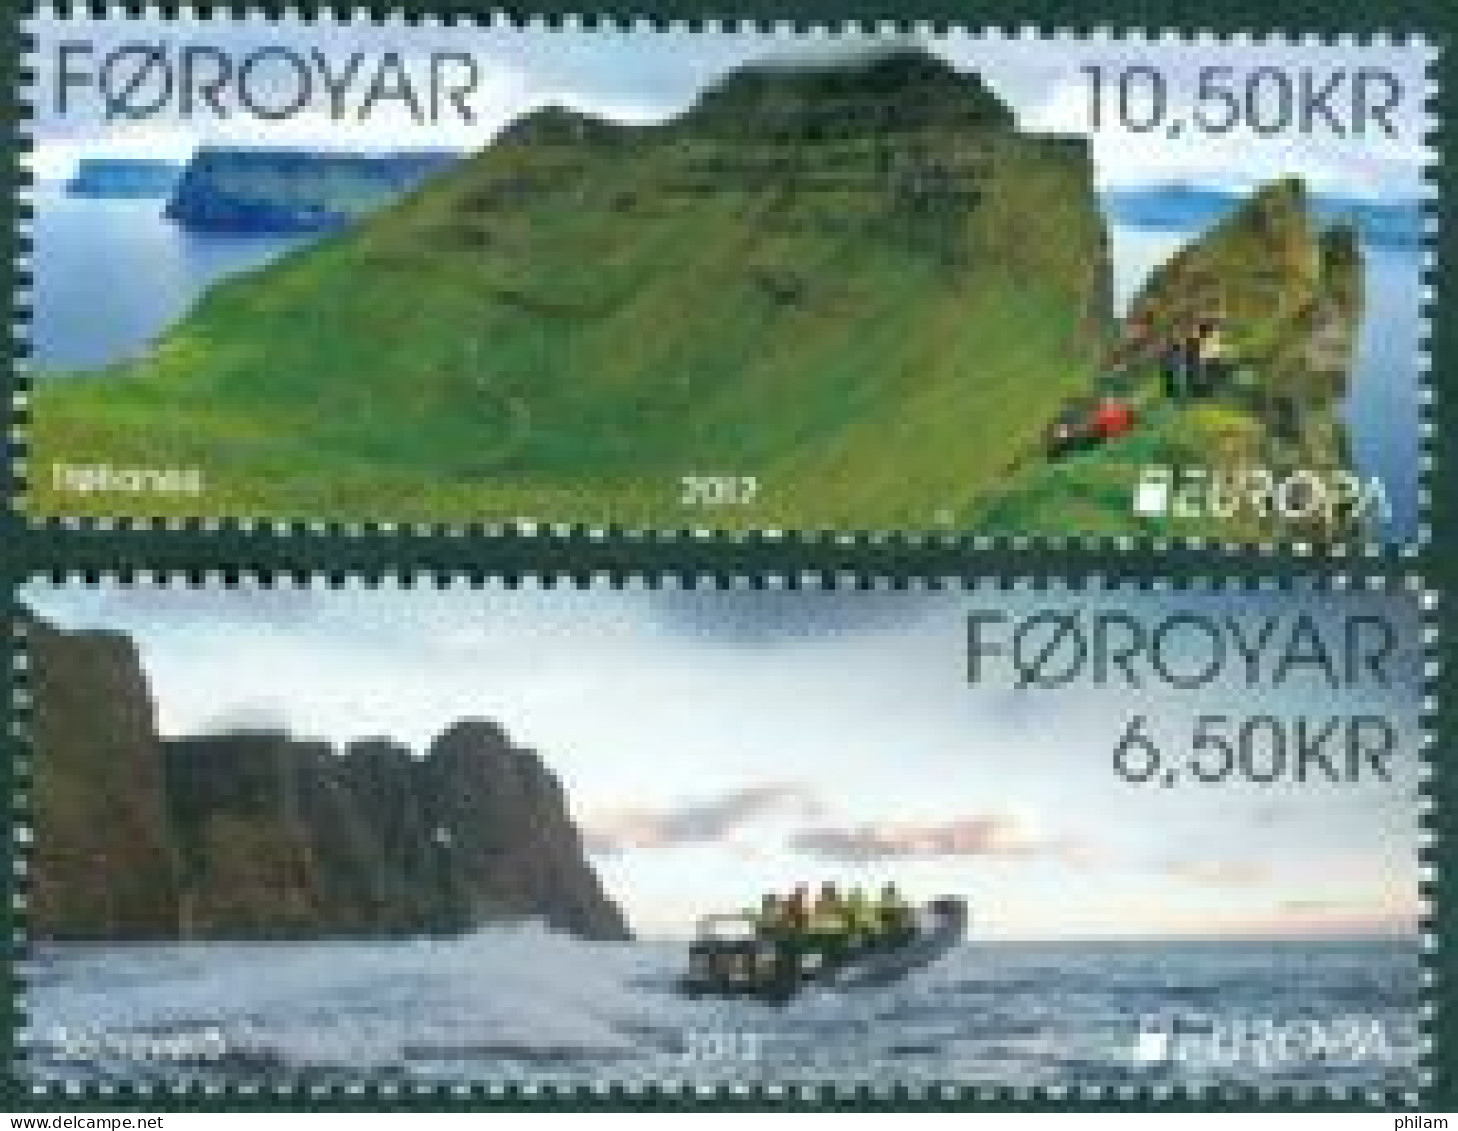 FEROES 2012 - Europa - Paysages à Visiter - 2 V.                                                         - Faroe Islands